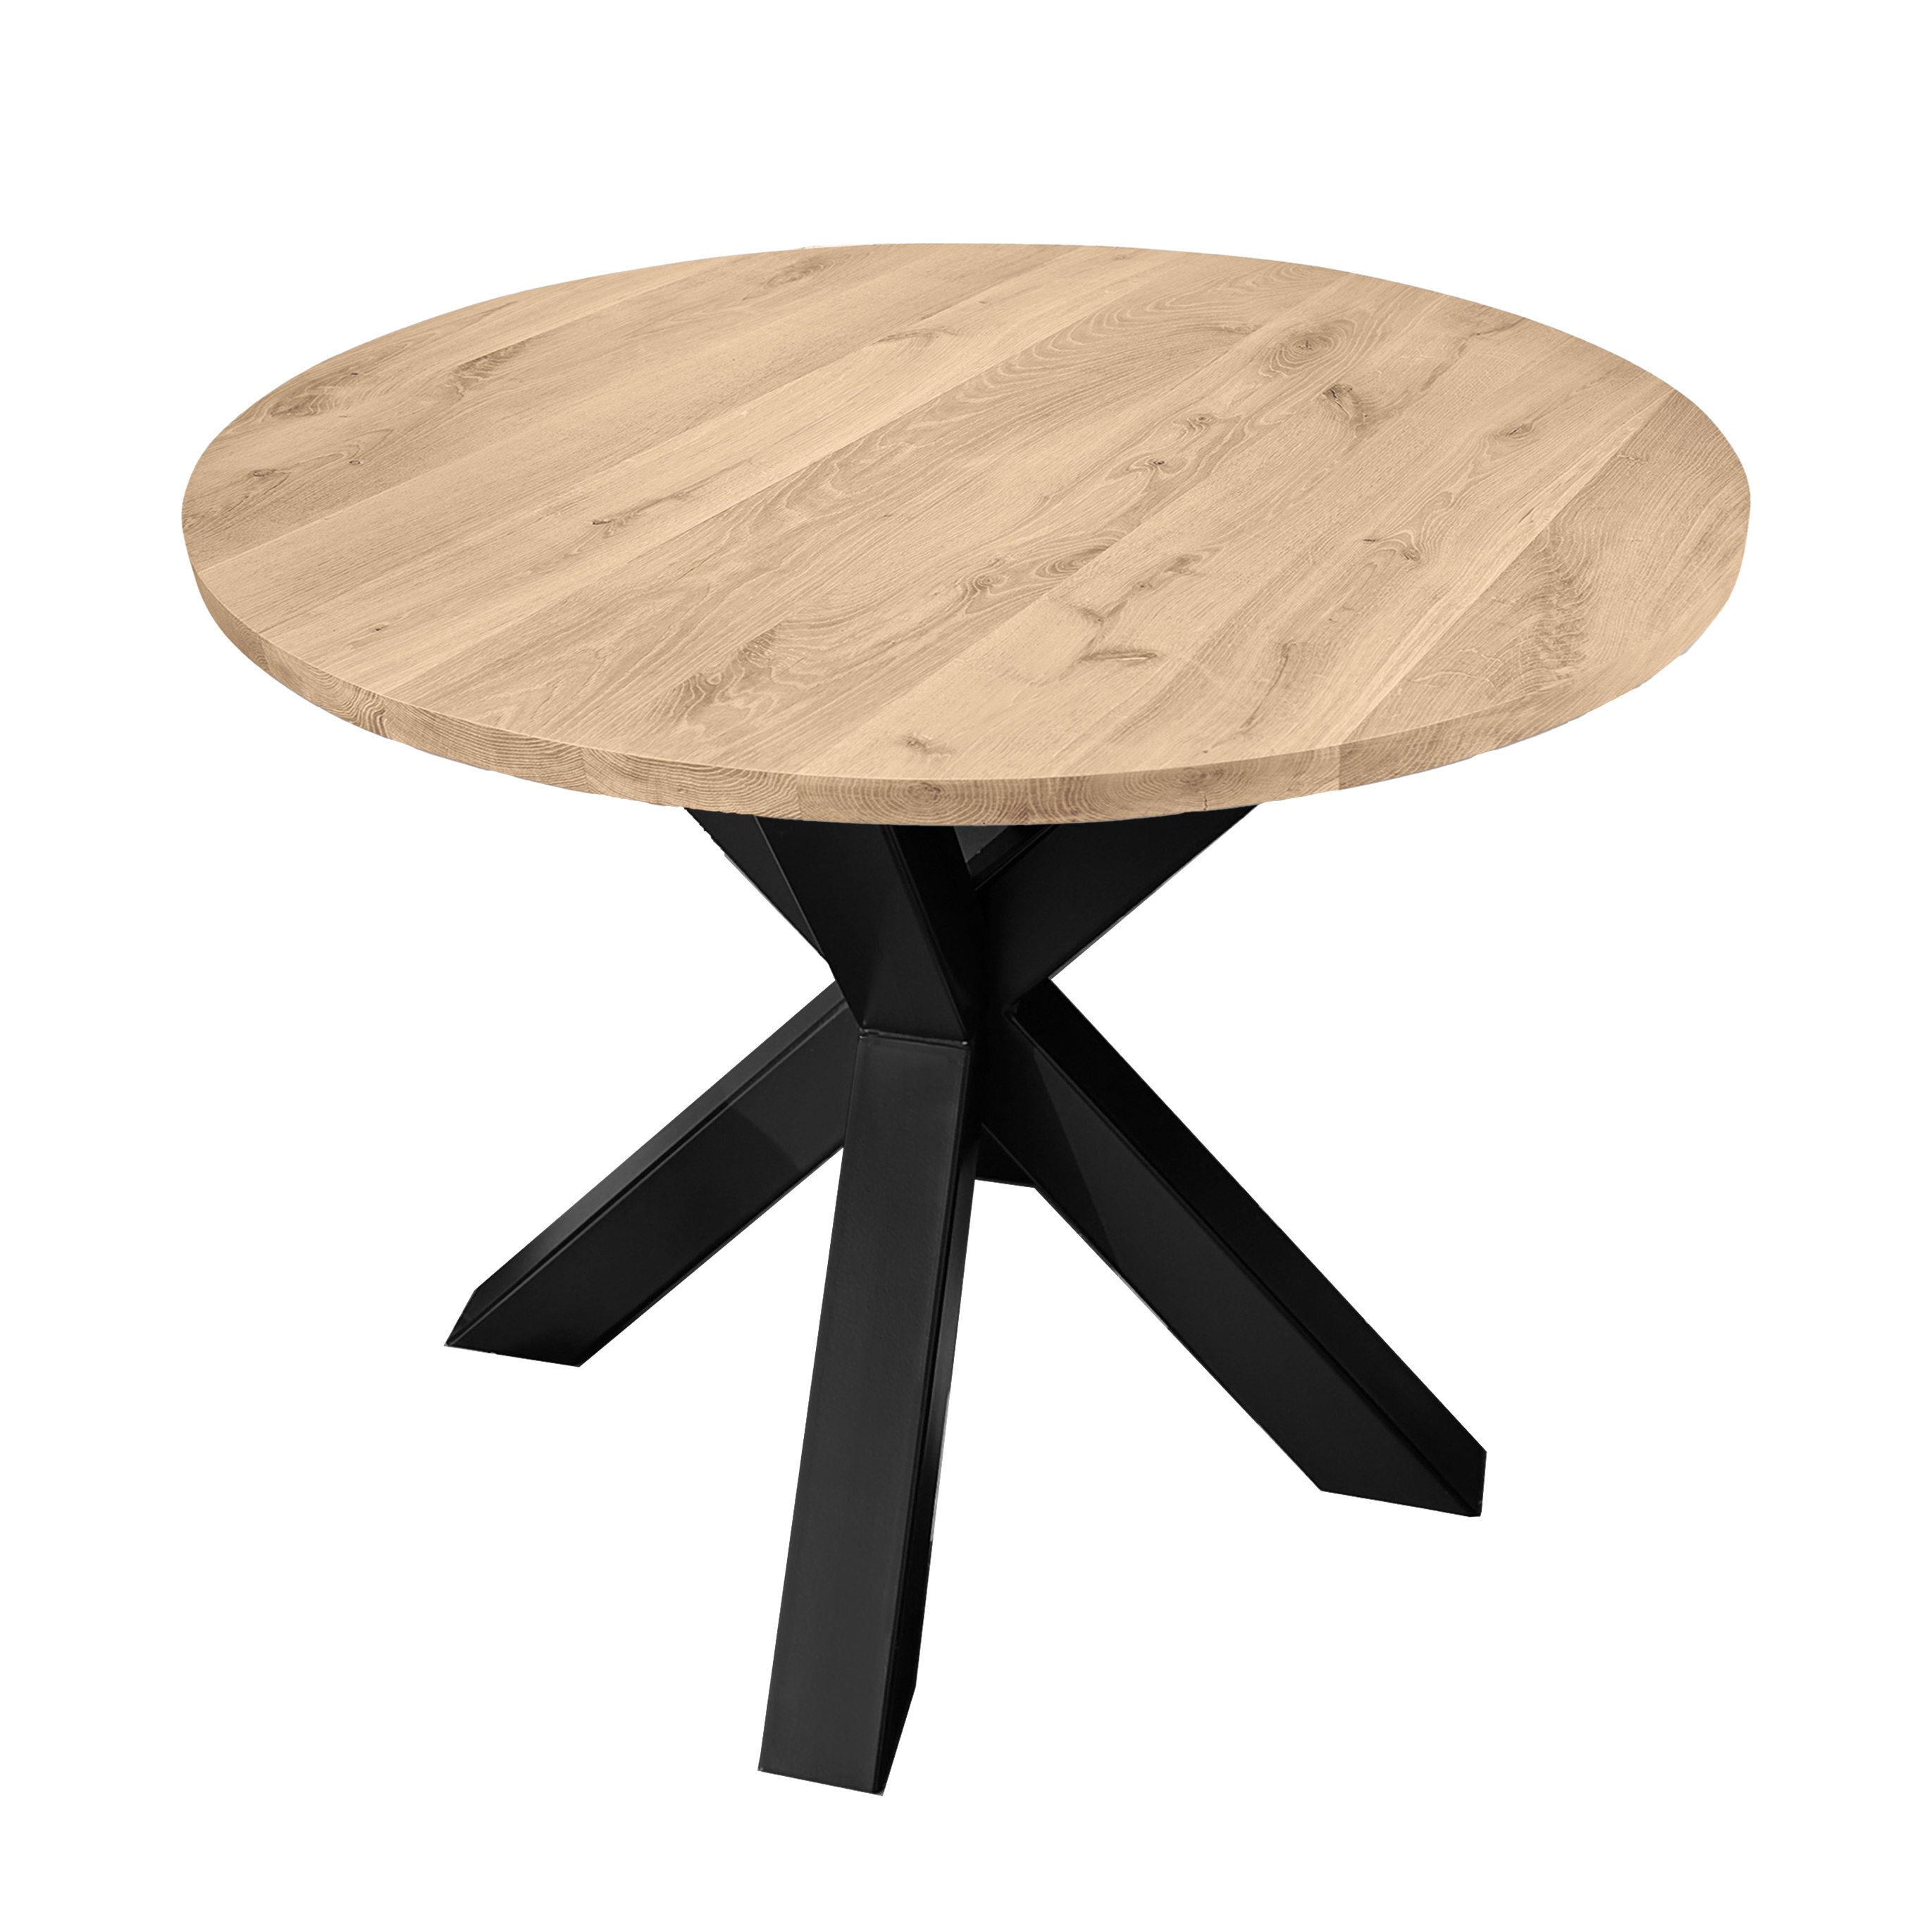  Tischplatte Wildeiche rund nach Maß - 2,5 cm dick (1-Schicht) - XXL Lamellen (14-20 cm breit) - Asteiche (rustikal) - verleimt & künstlich getrocknet (HF 8-12%) - Durchmesser: 40 - 117 cm